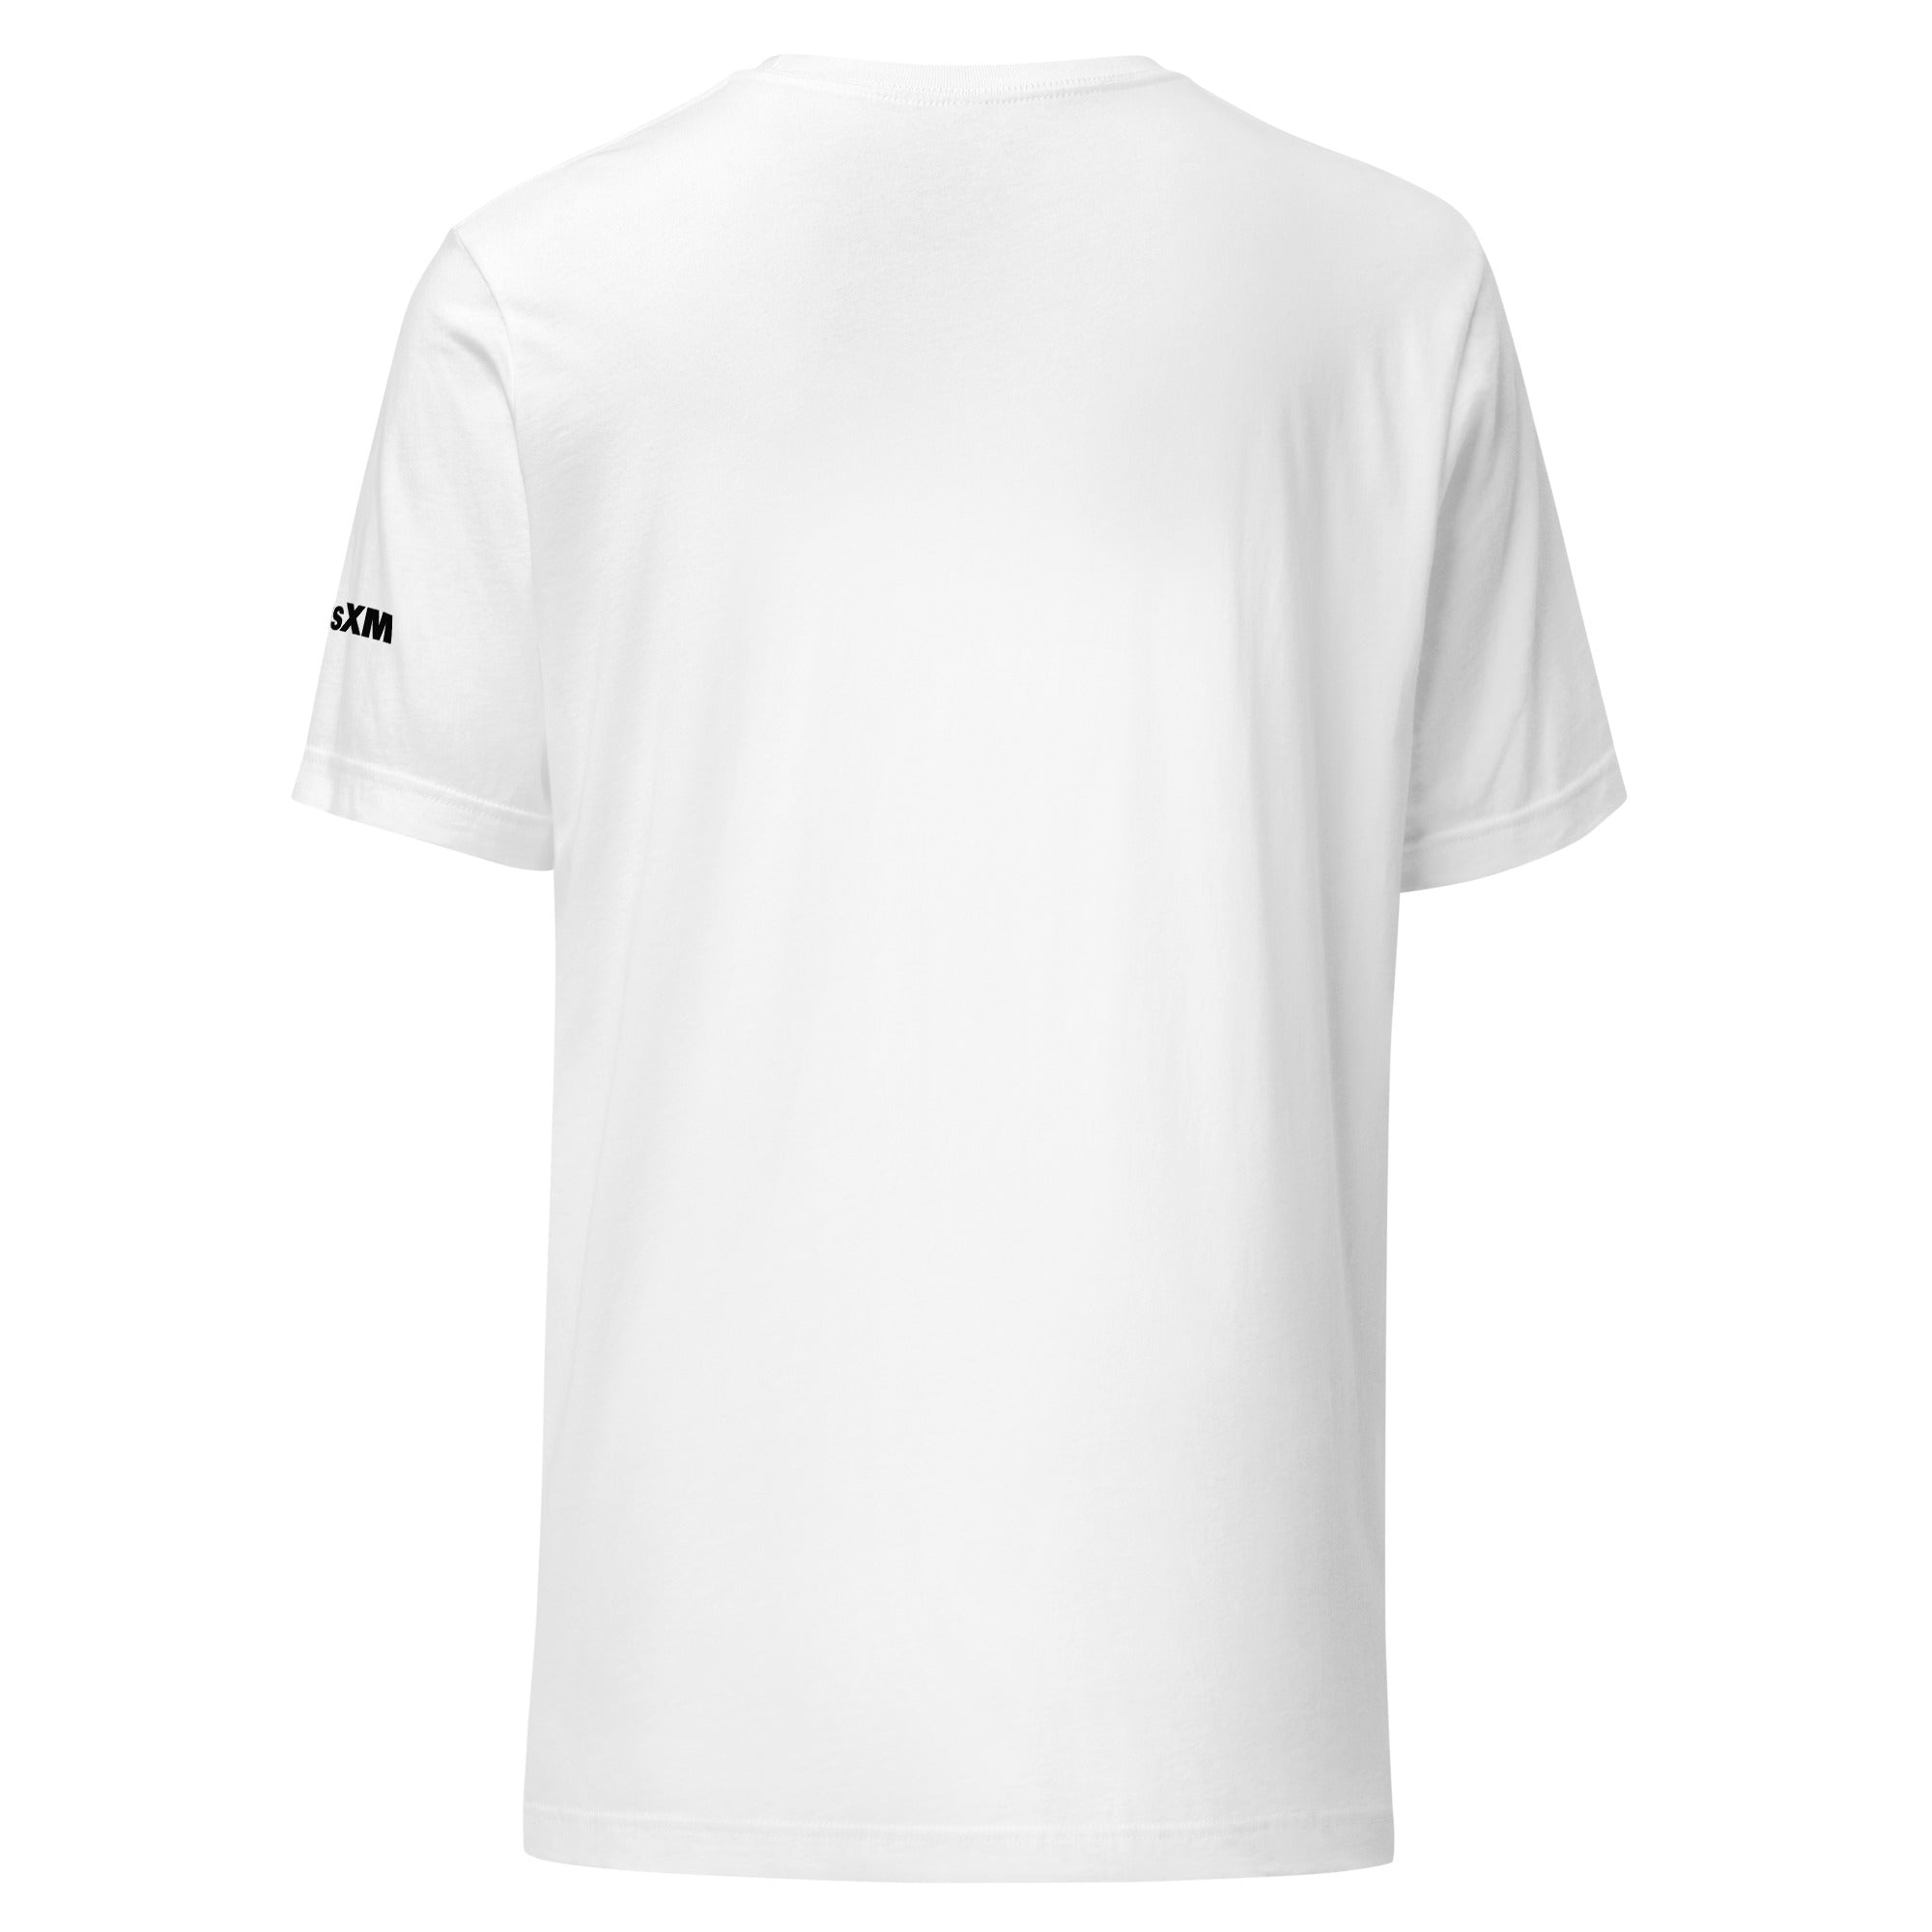 Utopia: T-shirt (White)